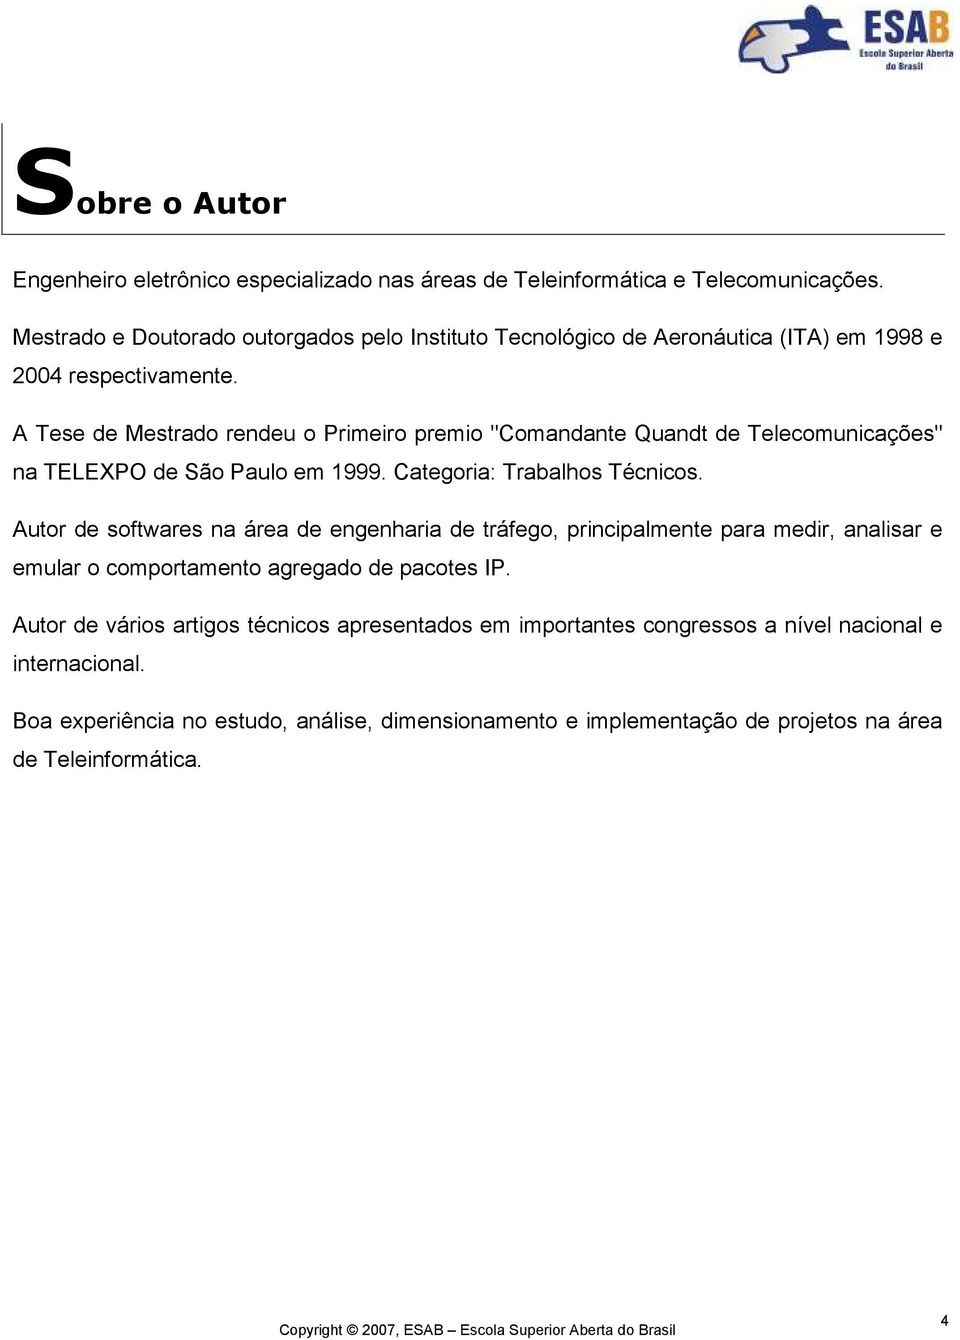 A Tese de Mestrado rendeu o Primeiro premio "Comandante Quandt de Telecomunicações" na TELEXPO de São Paulo em 1999. Categoria: Trabalhos Técnicos.